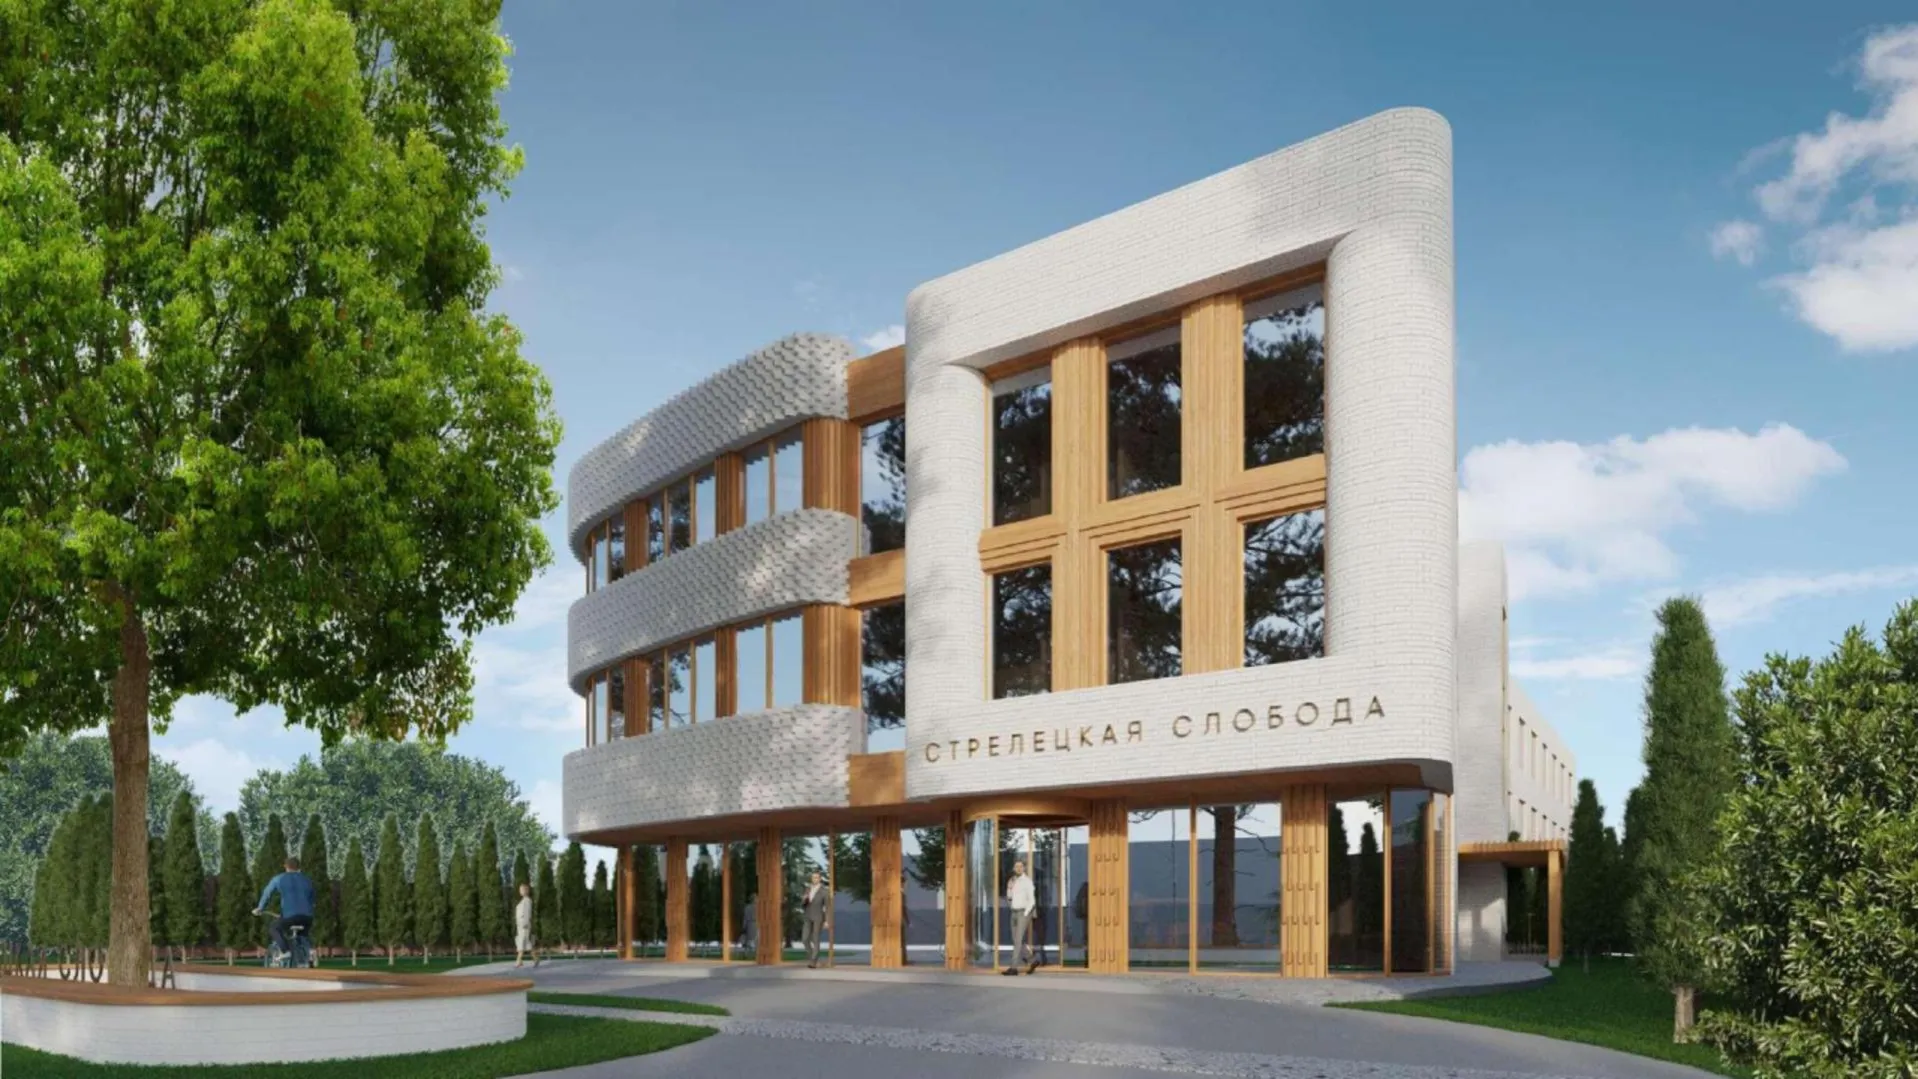 Новую гостиницу с обтекаемыми формами построят в Сергиевом Посаде